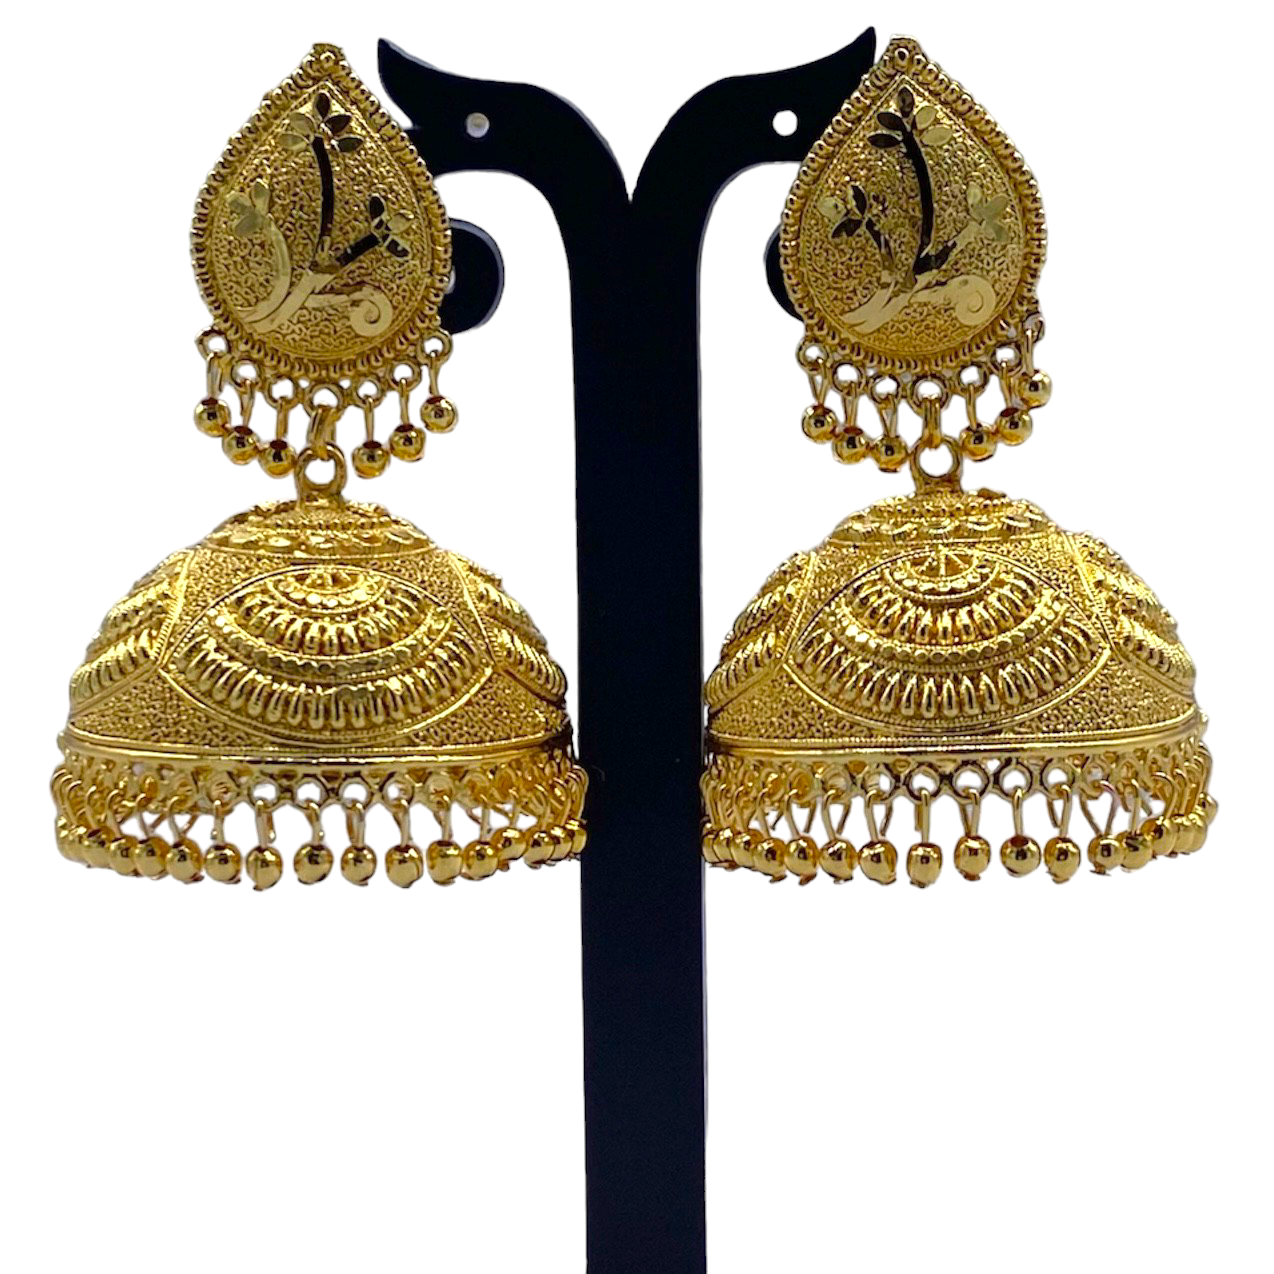 Big Gold Shining Zumkha Earrings